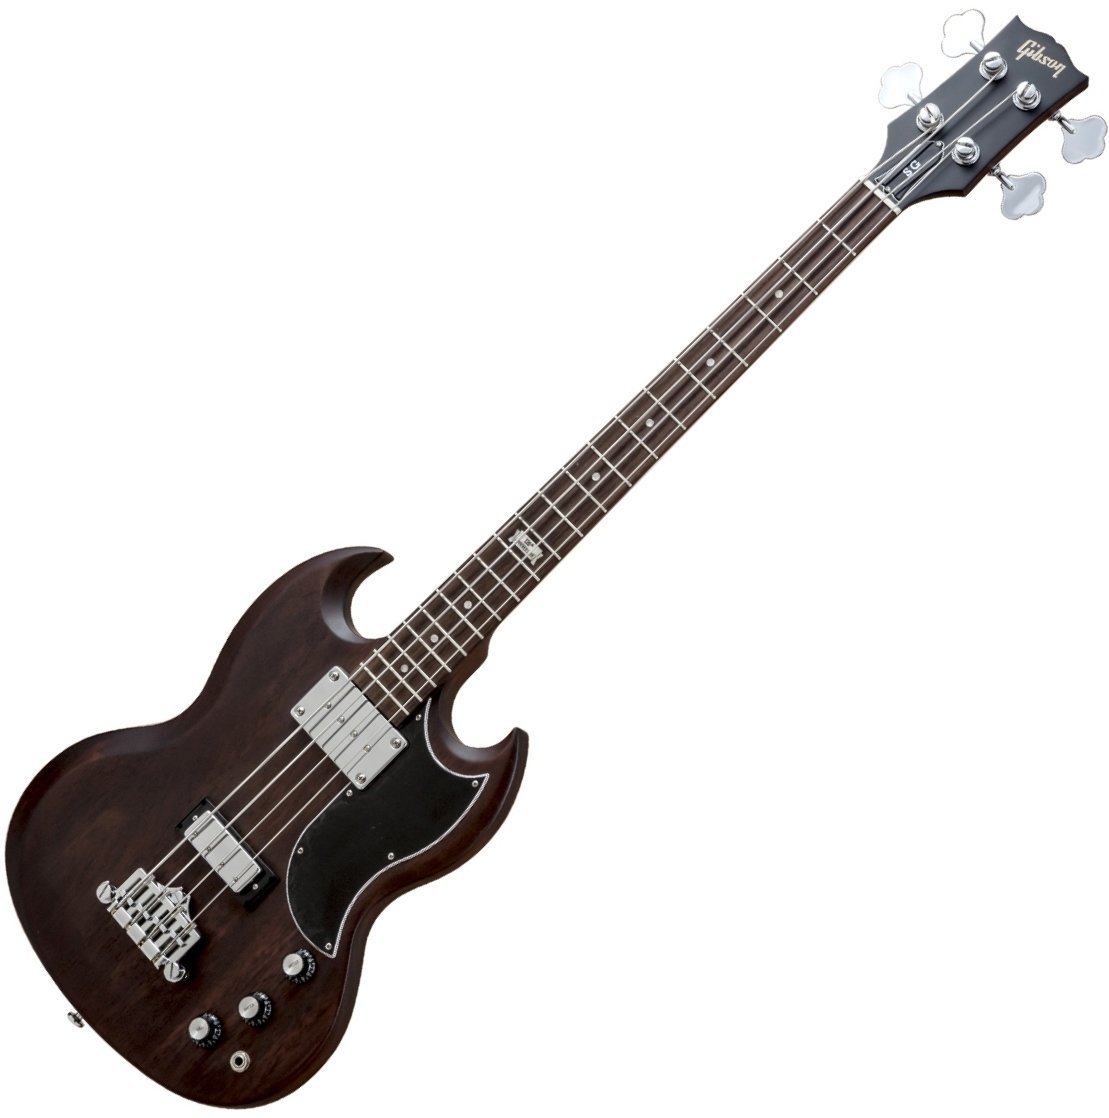 E-Bass Gibson SG Special Bass 2014 Chocolate Satin